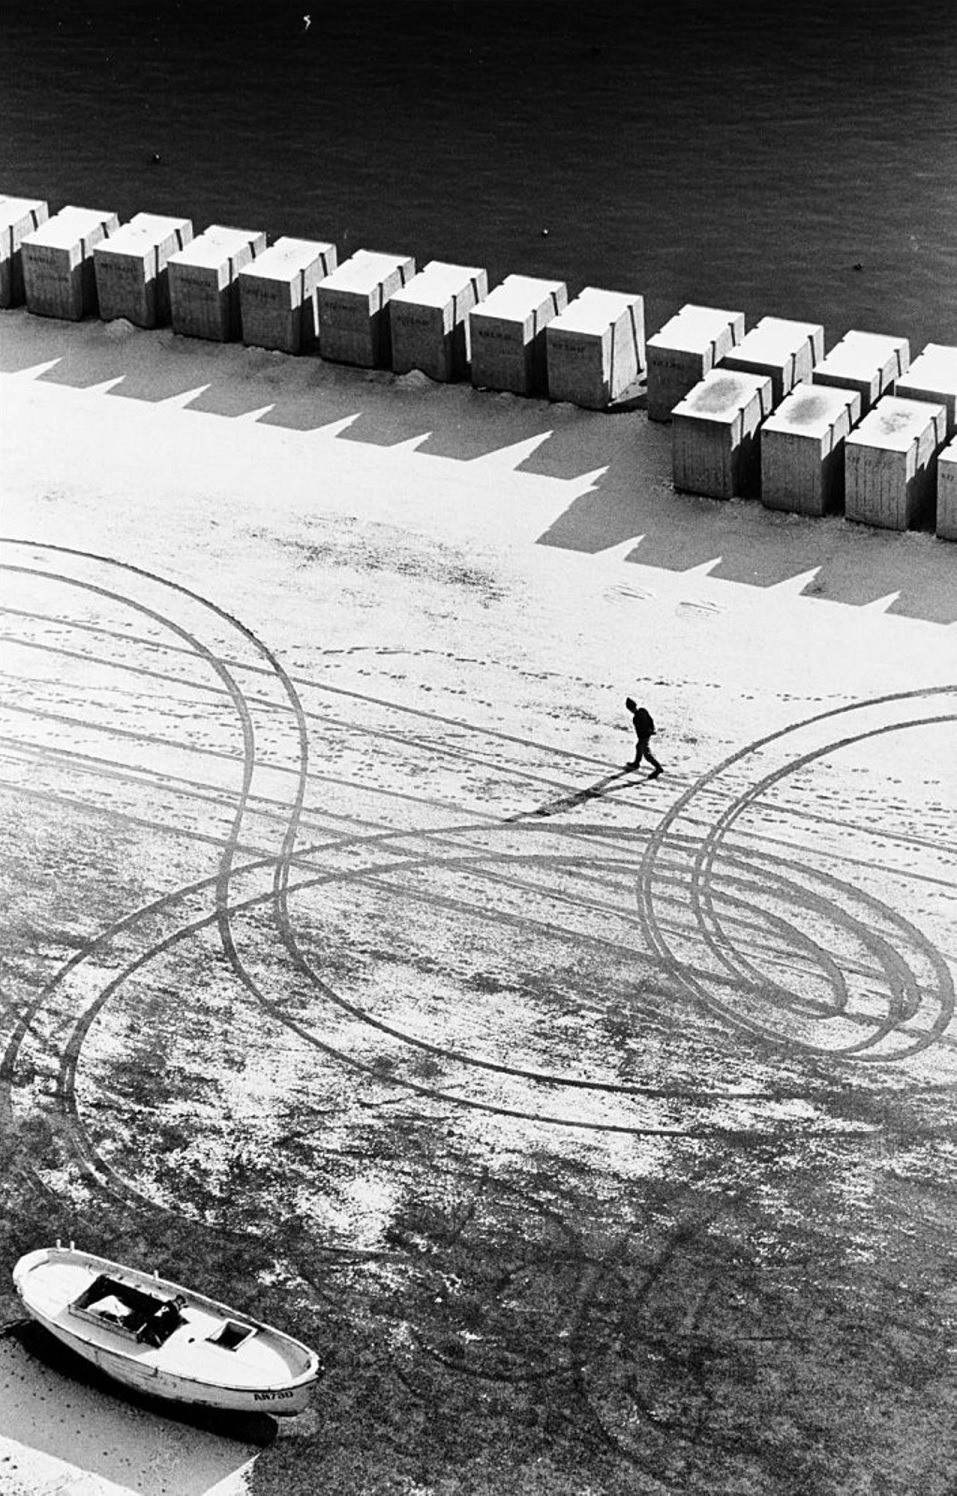 Ривьера дель Конеро, Италия, 1975. Фотограф Марио Де Бьязи